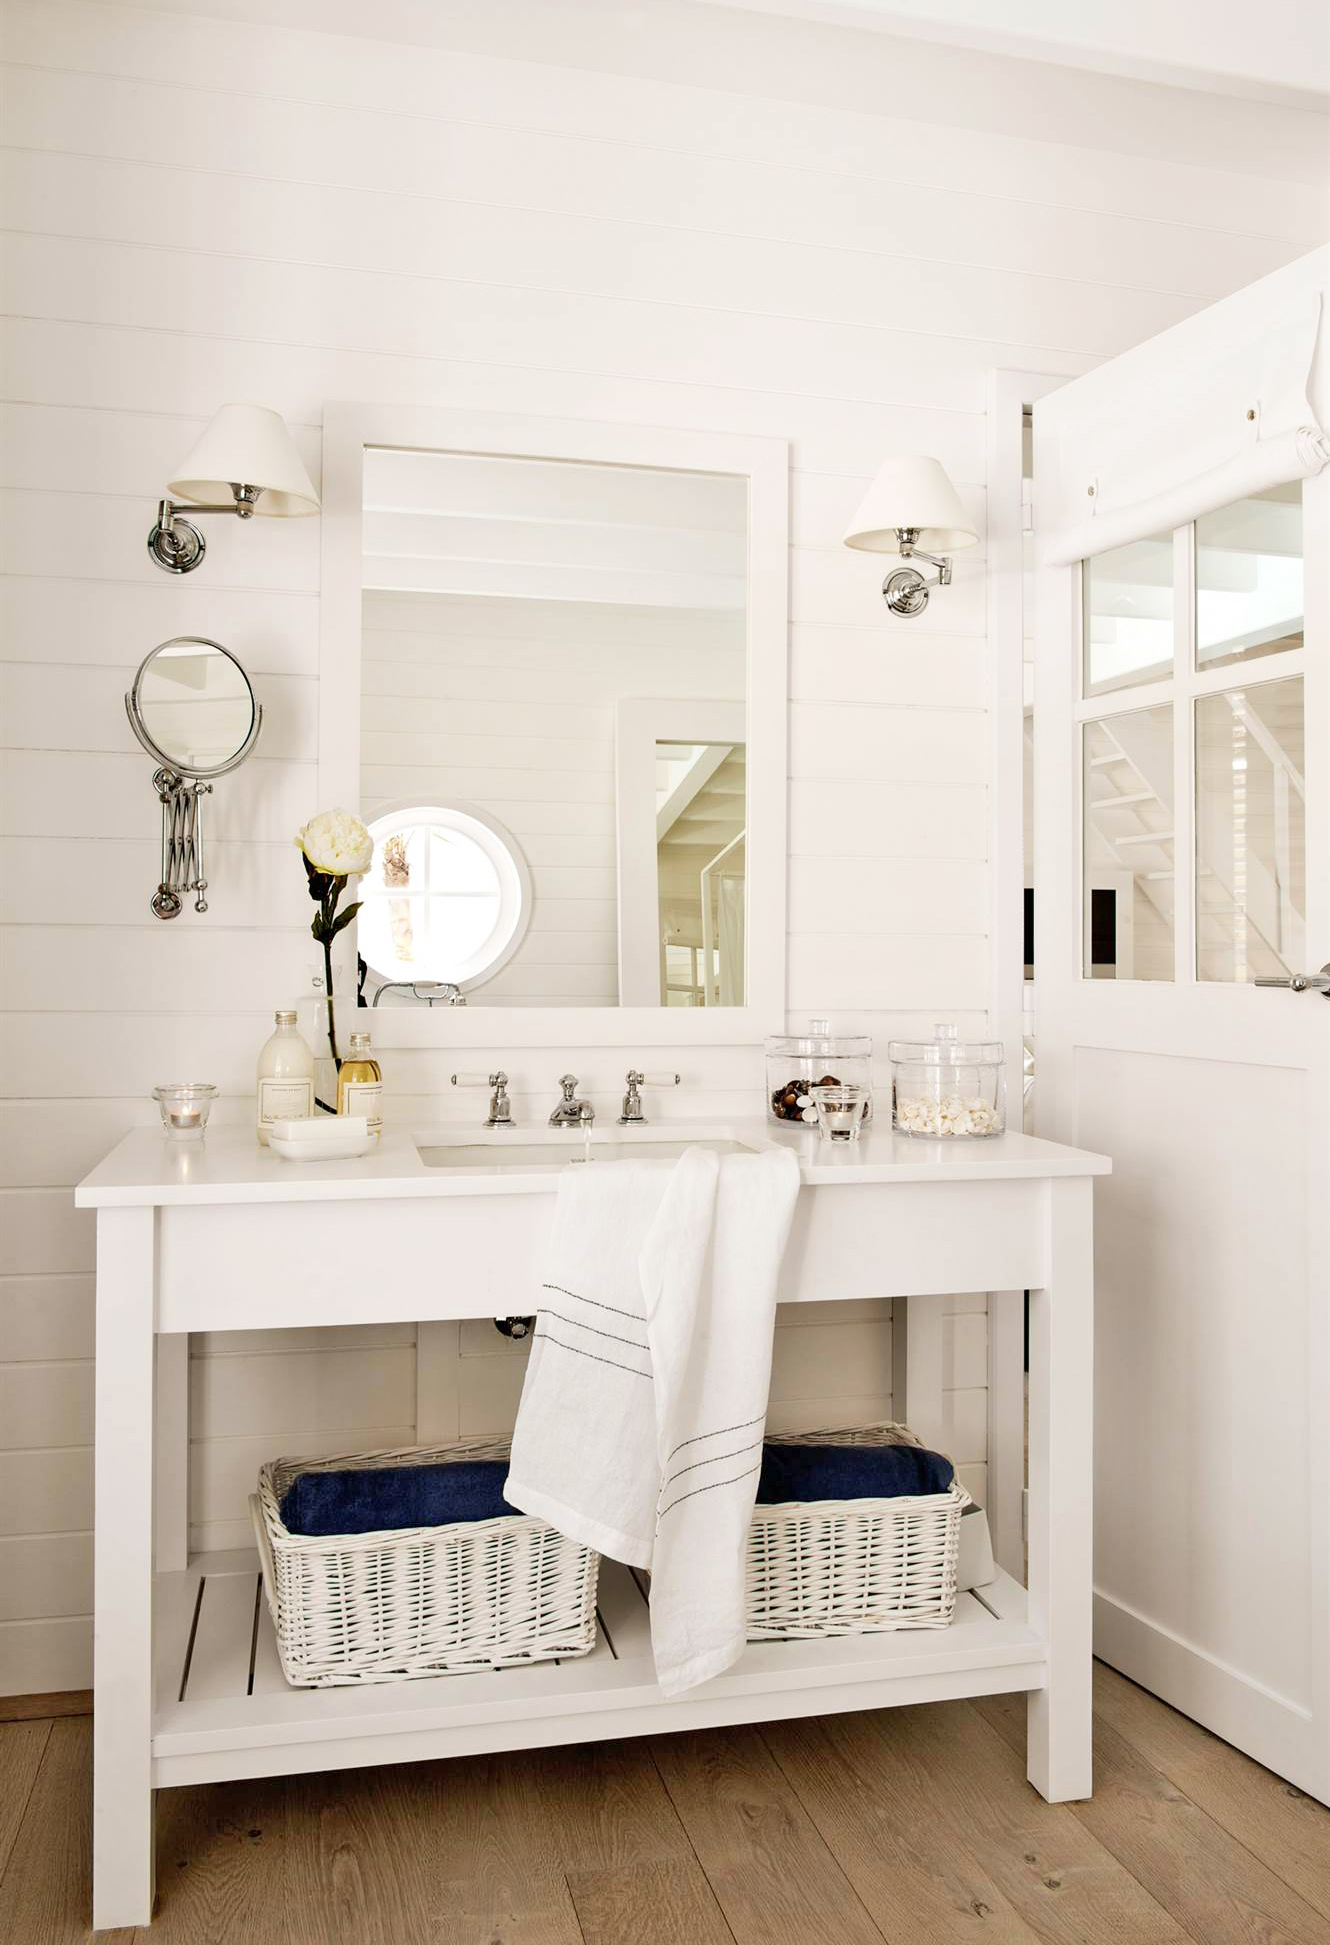 Razones para decorar el baño en color blanco